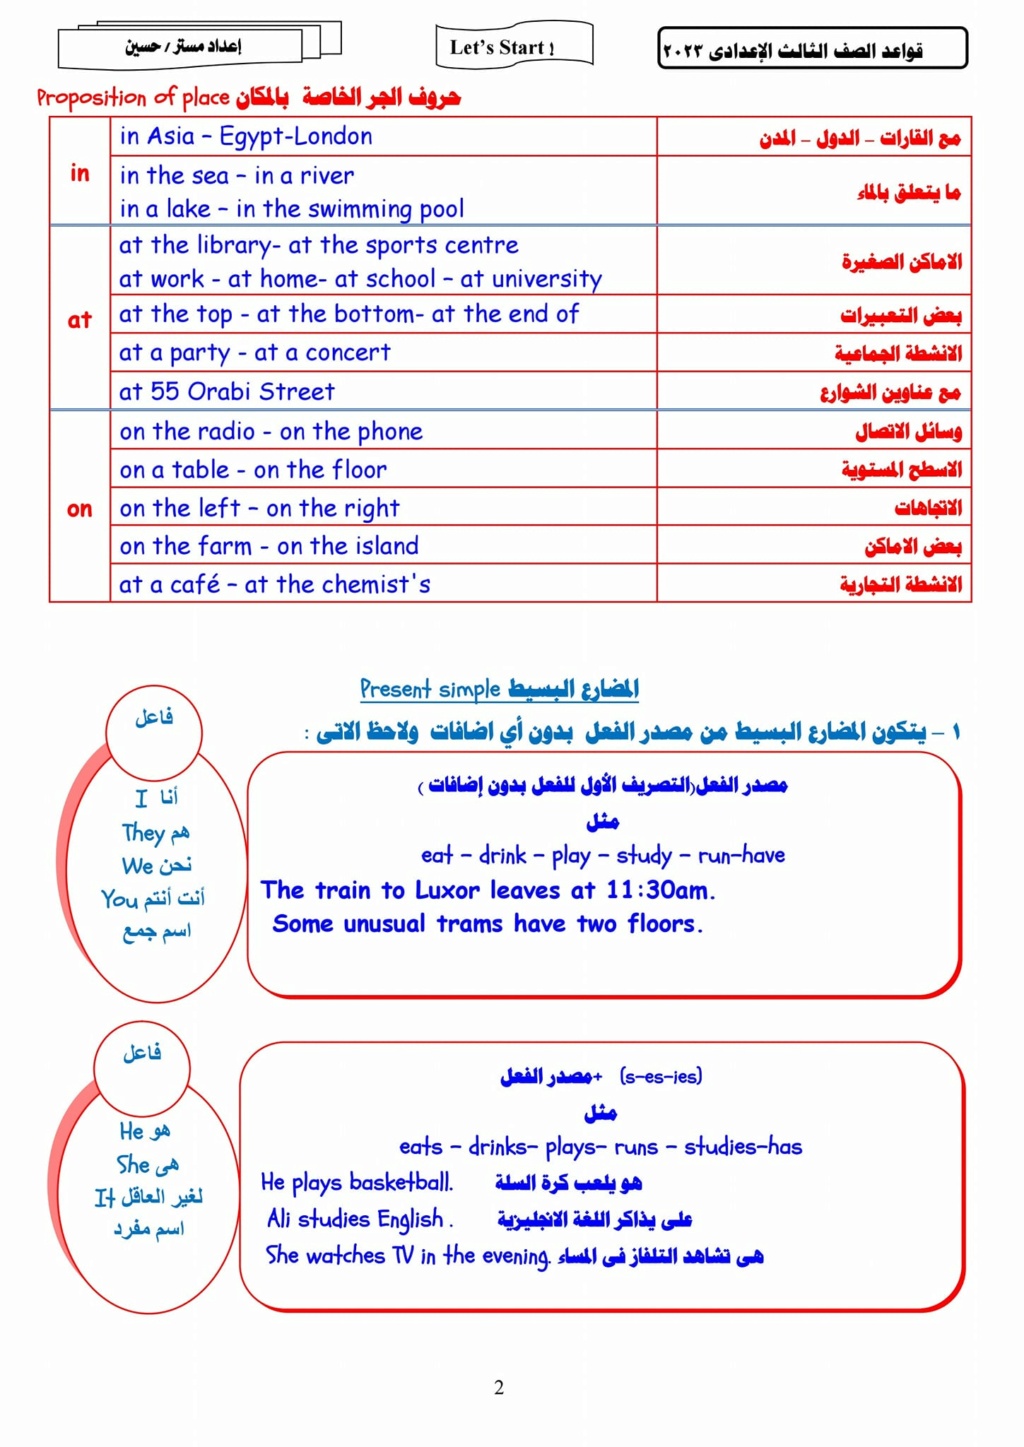 مذكرة جرامر الصف الثالث الاعدادي. pdf أ. حسين عبد العزيز 1328